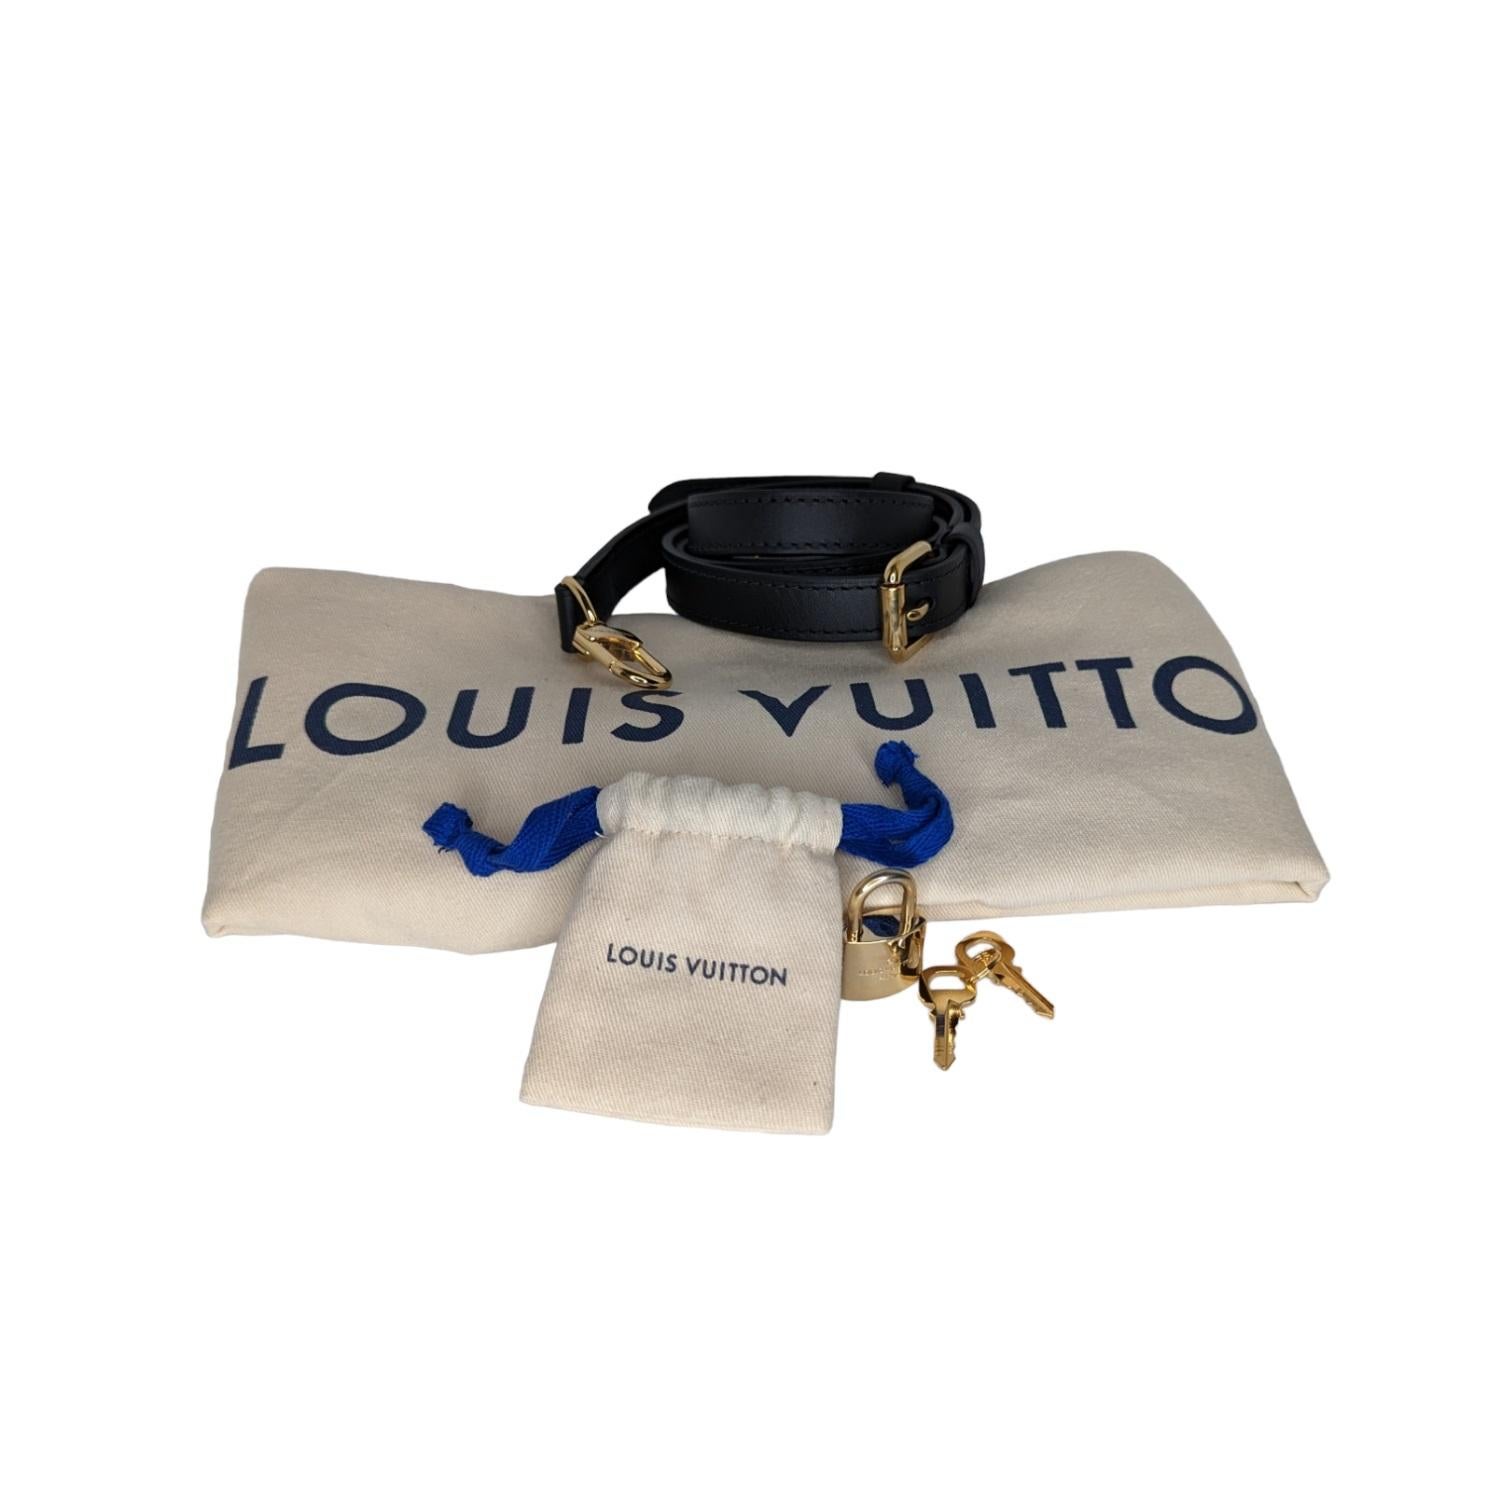 Women's Louis Vuitton Jacquard Since 1854 Speedy Bandoulière 25